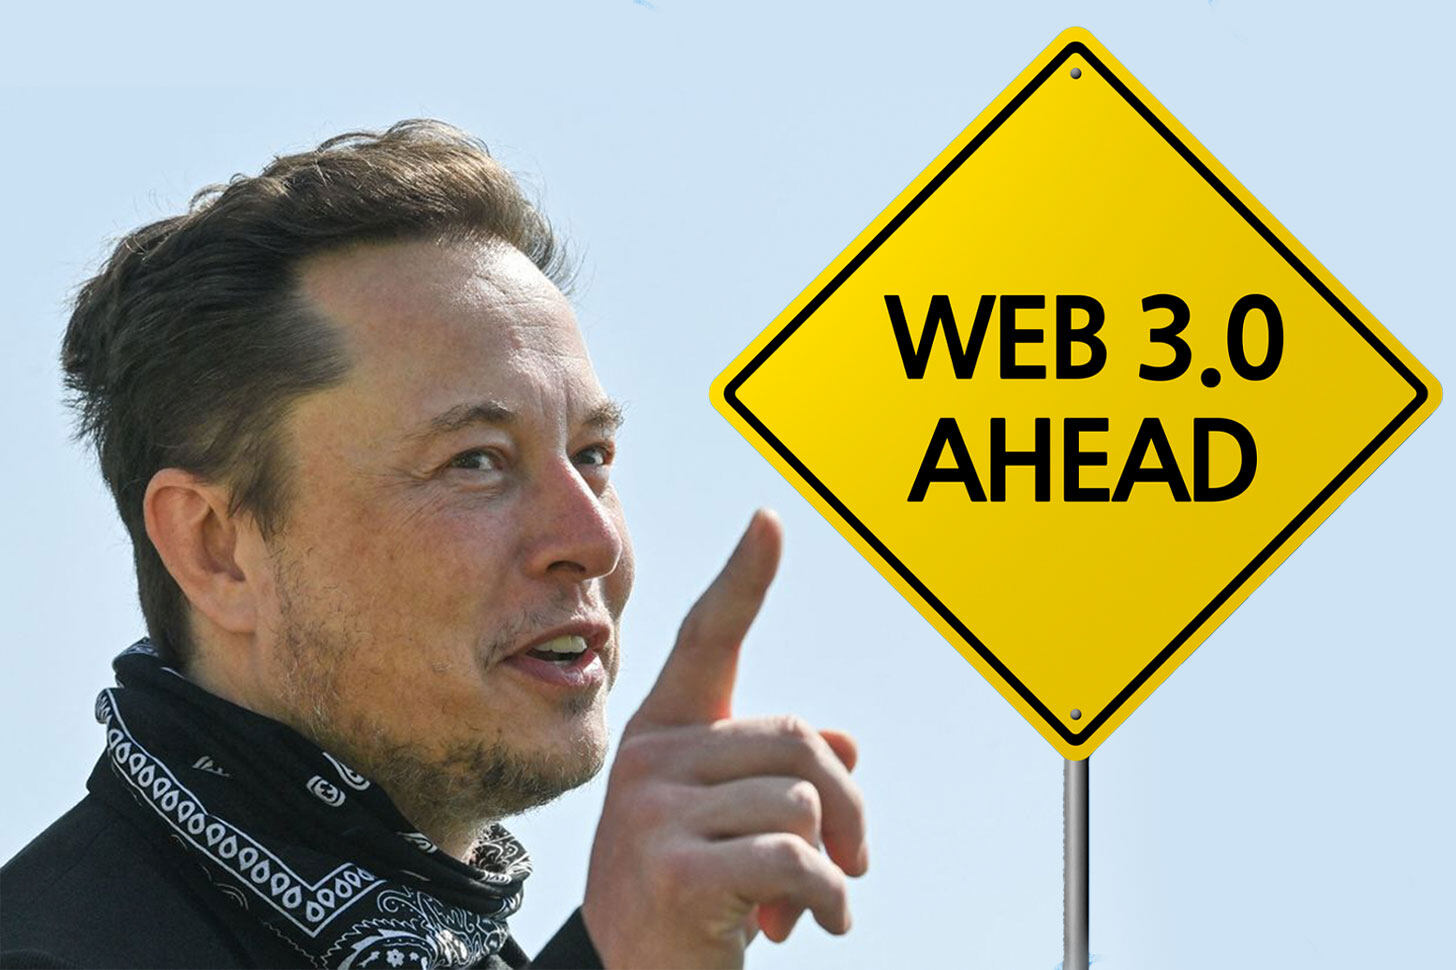 甚麼是Web 3.0？2022年將開始成為焦點？能呼風喚雨的Elon Musk又點睇？